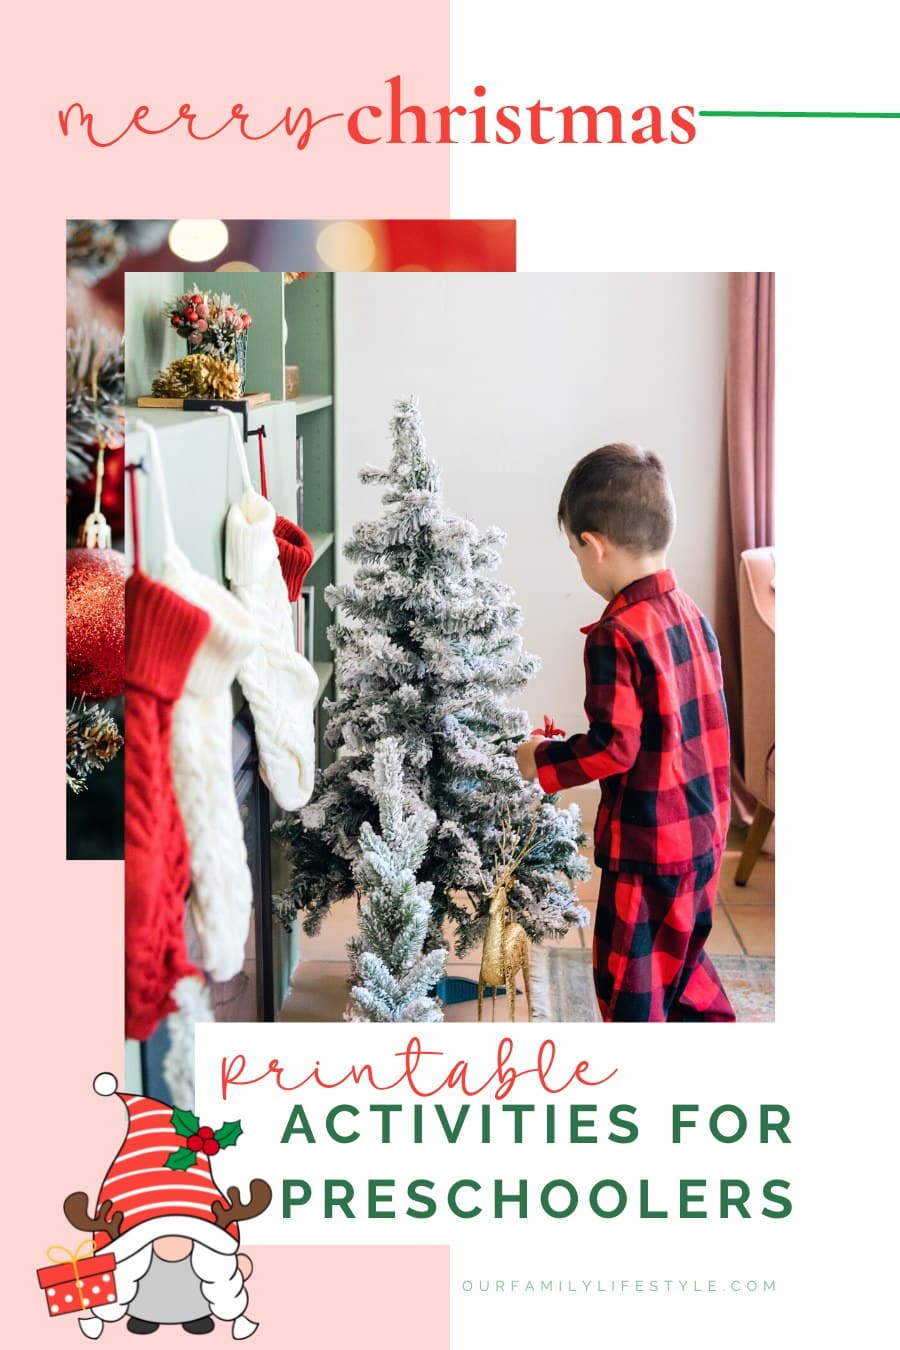 Printable Christmas Activities for Preschoolers